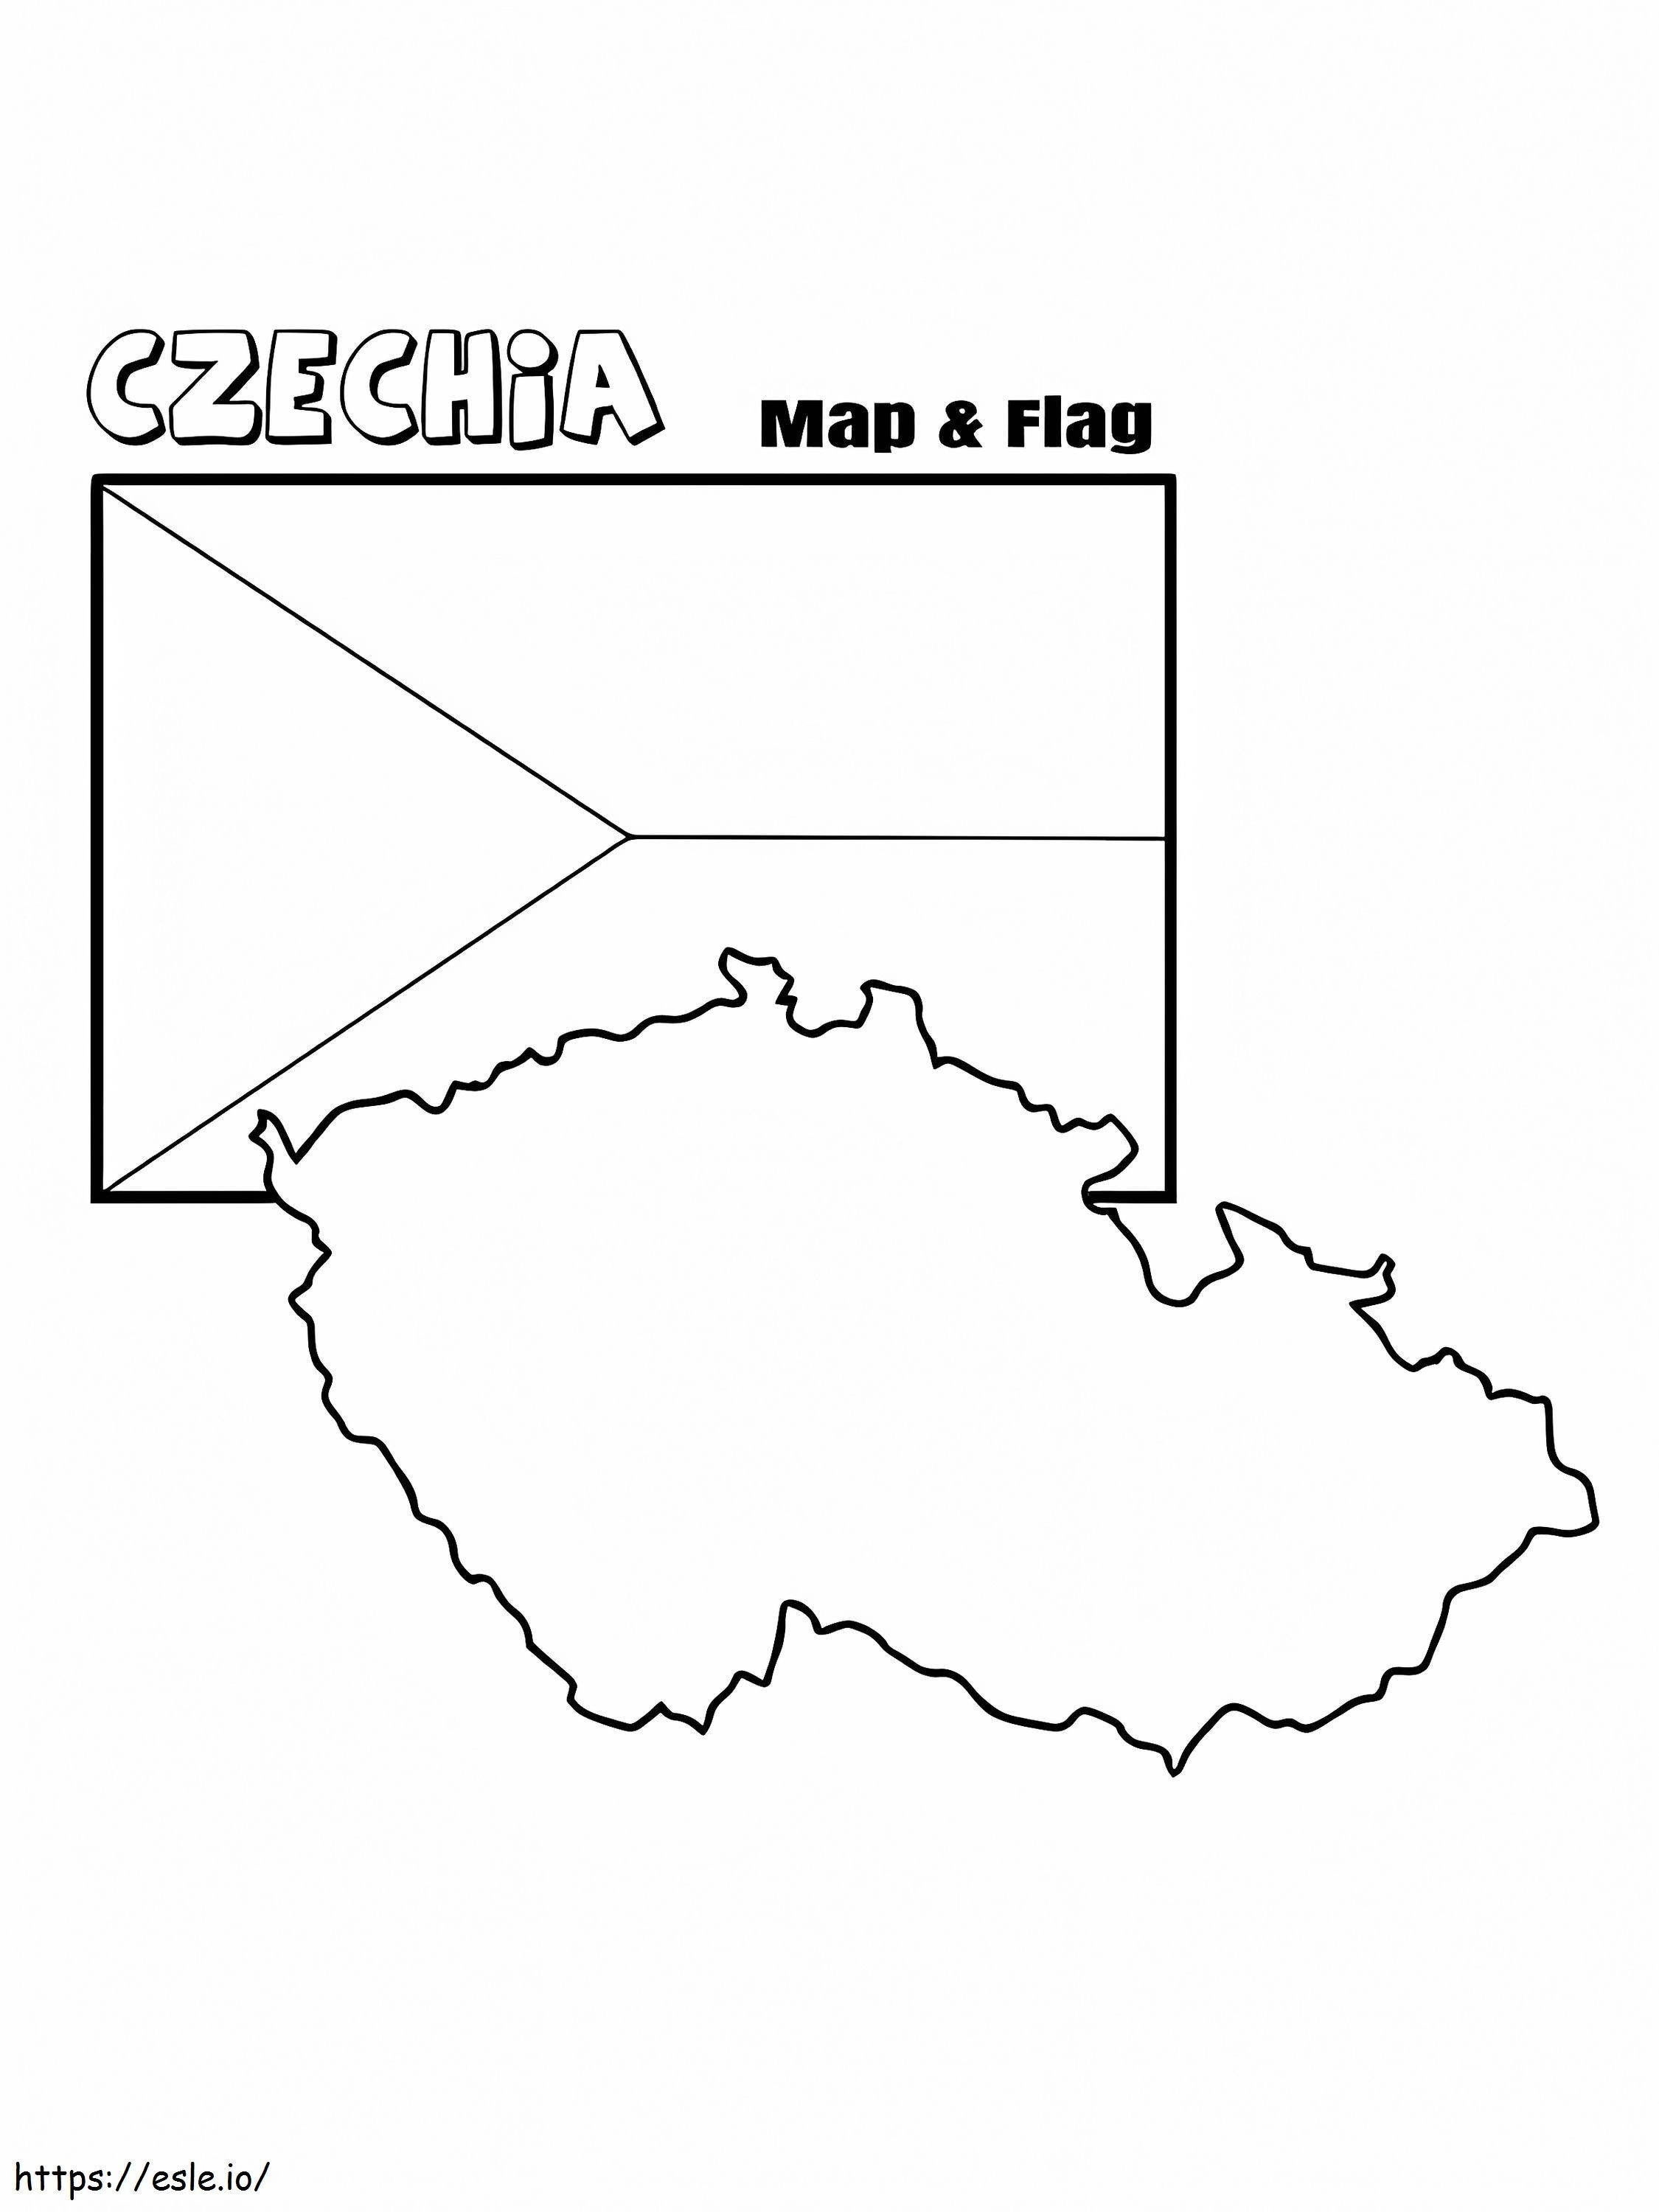 çekya bayrağı ve haritası boyama